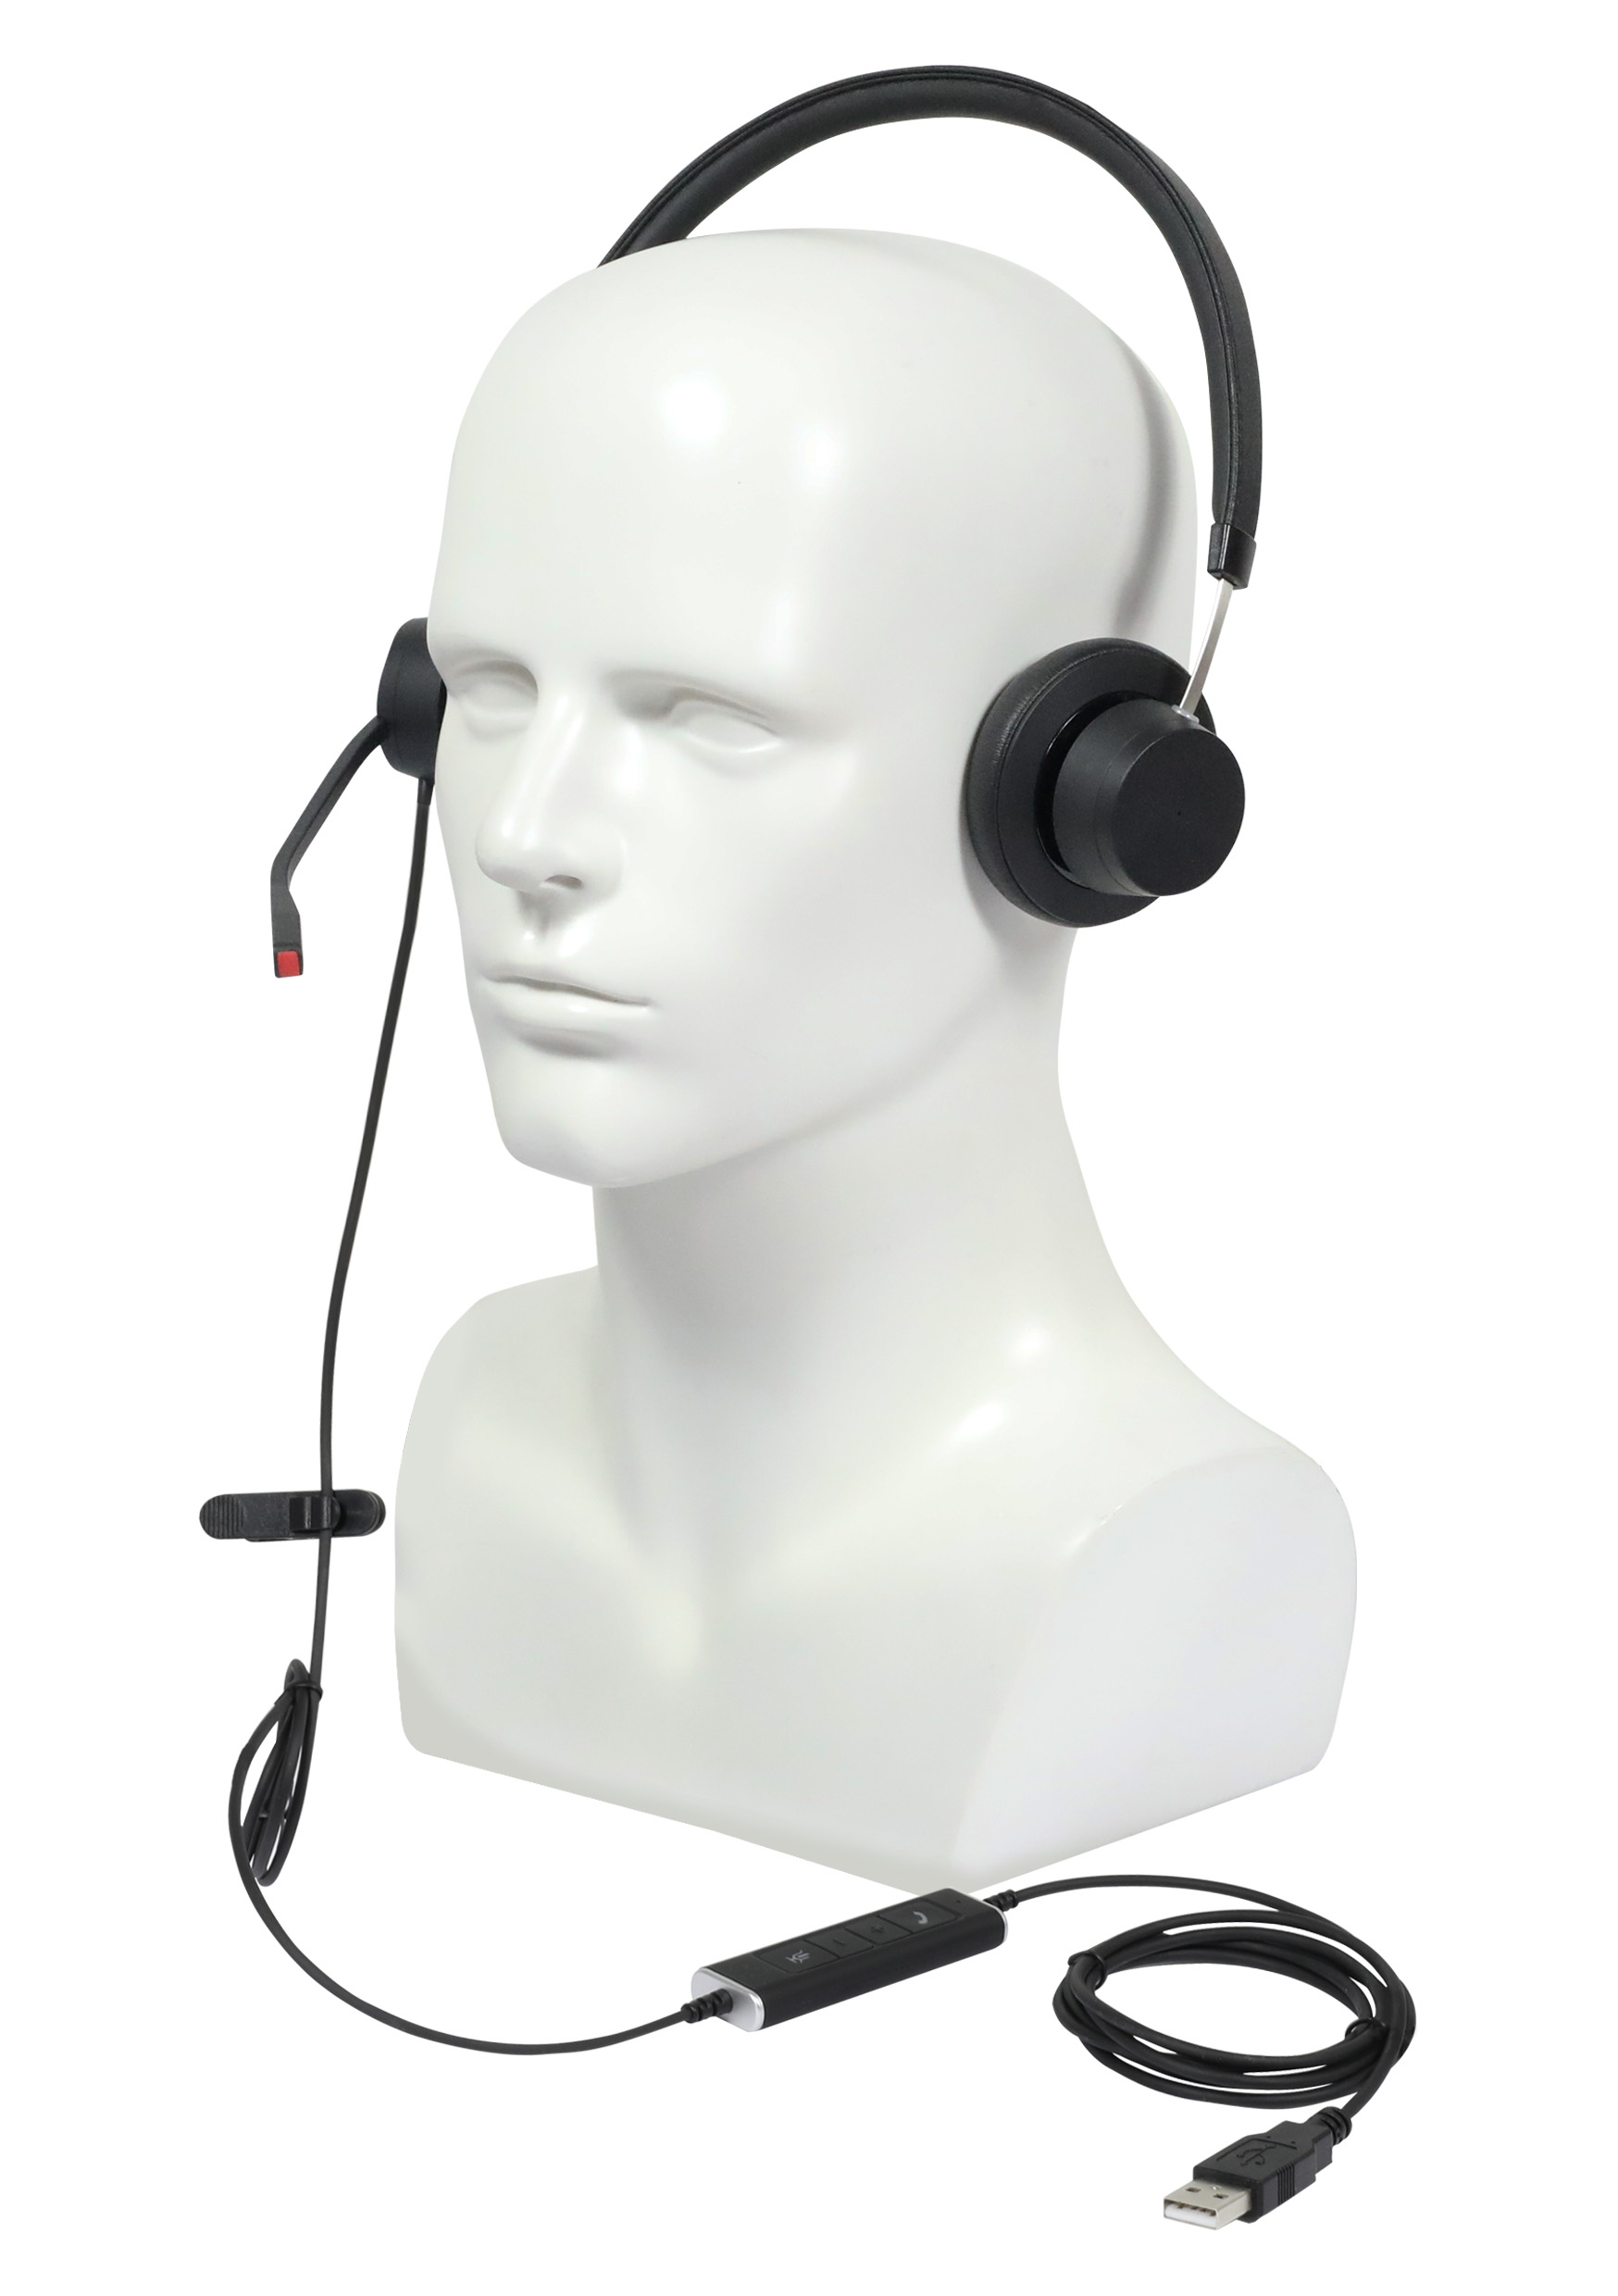 Plusonic wired Headset X140 binaural